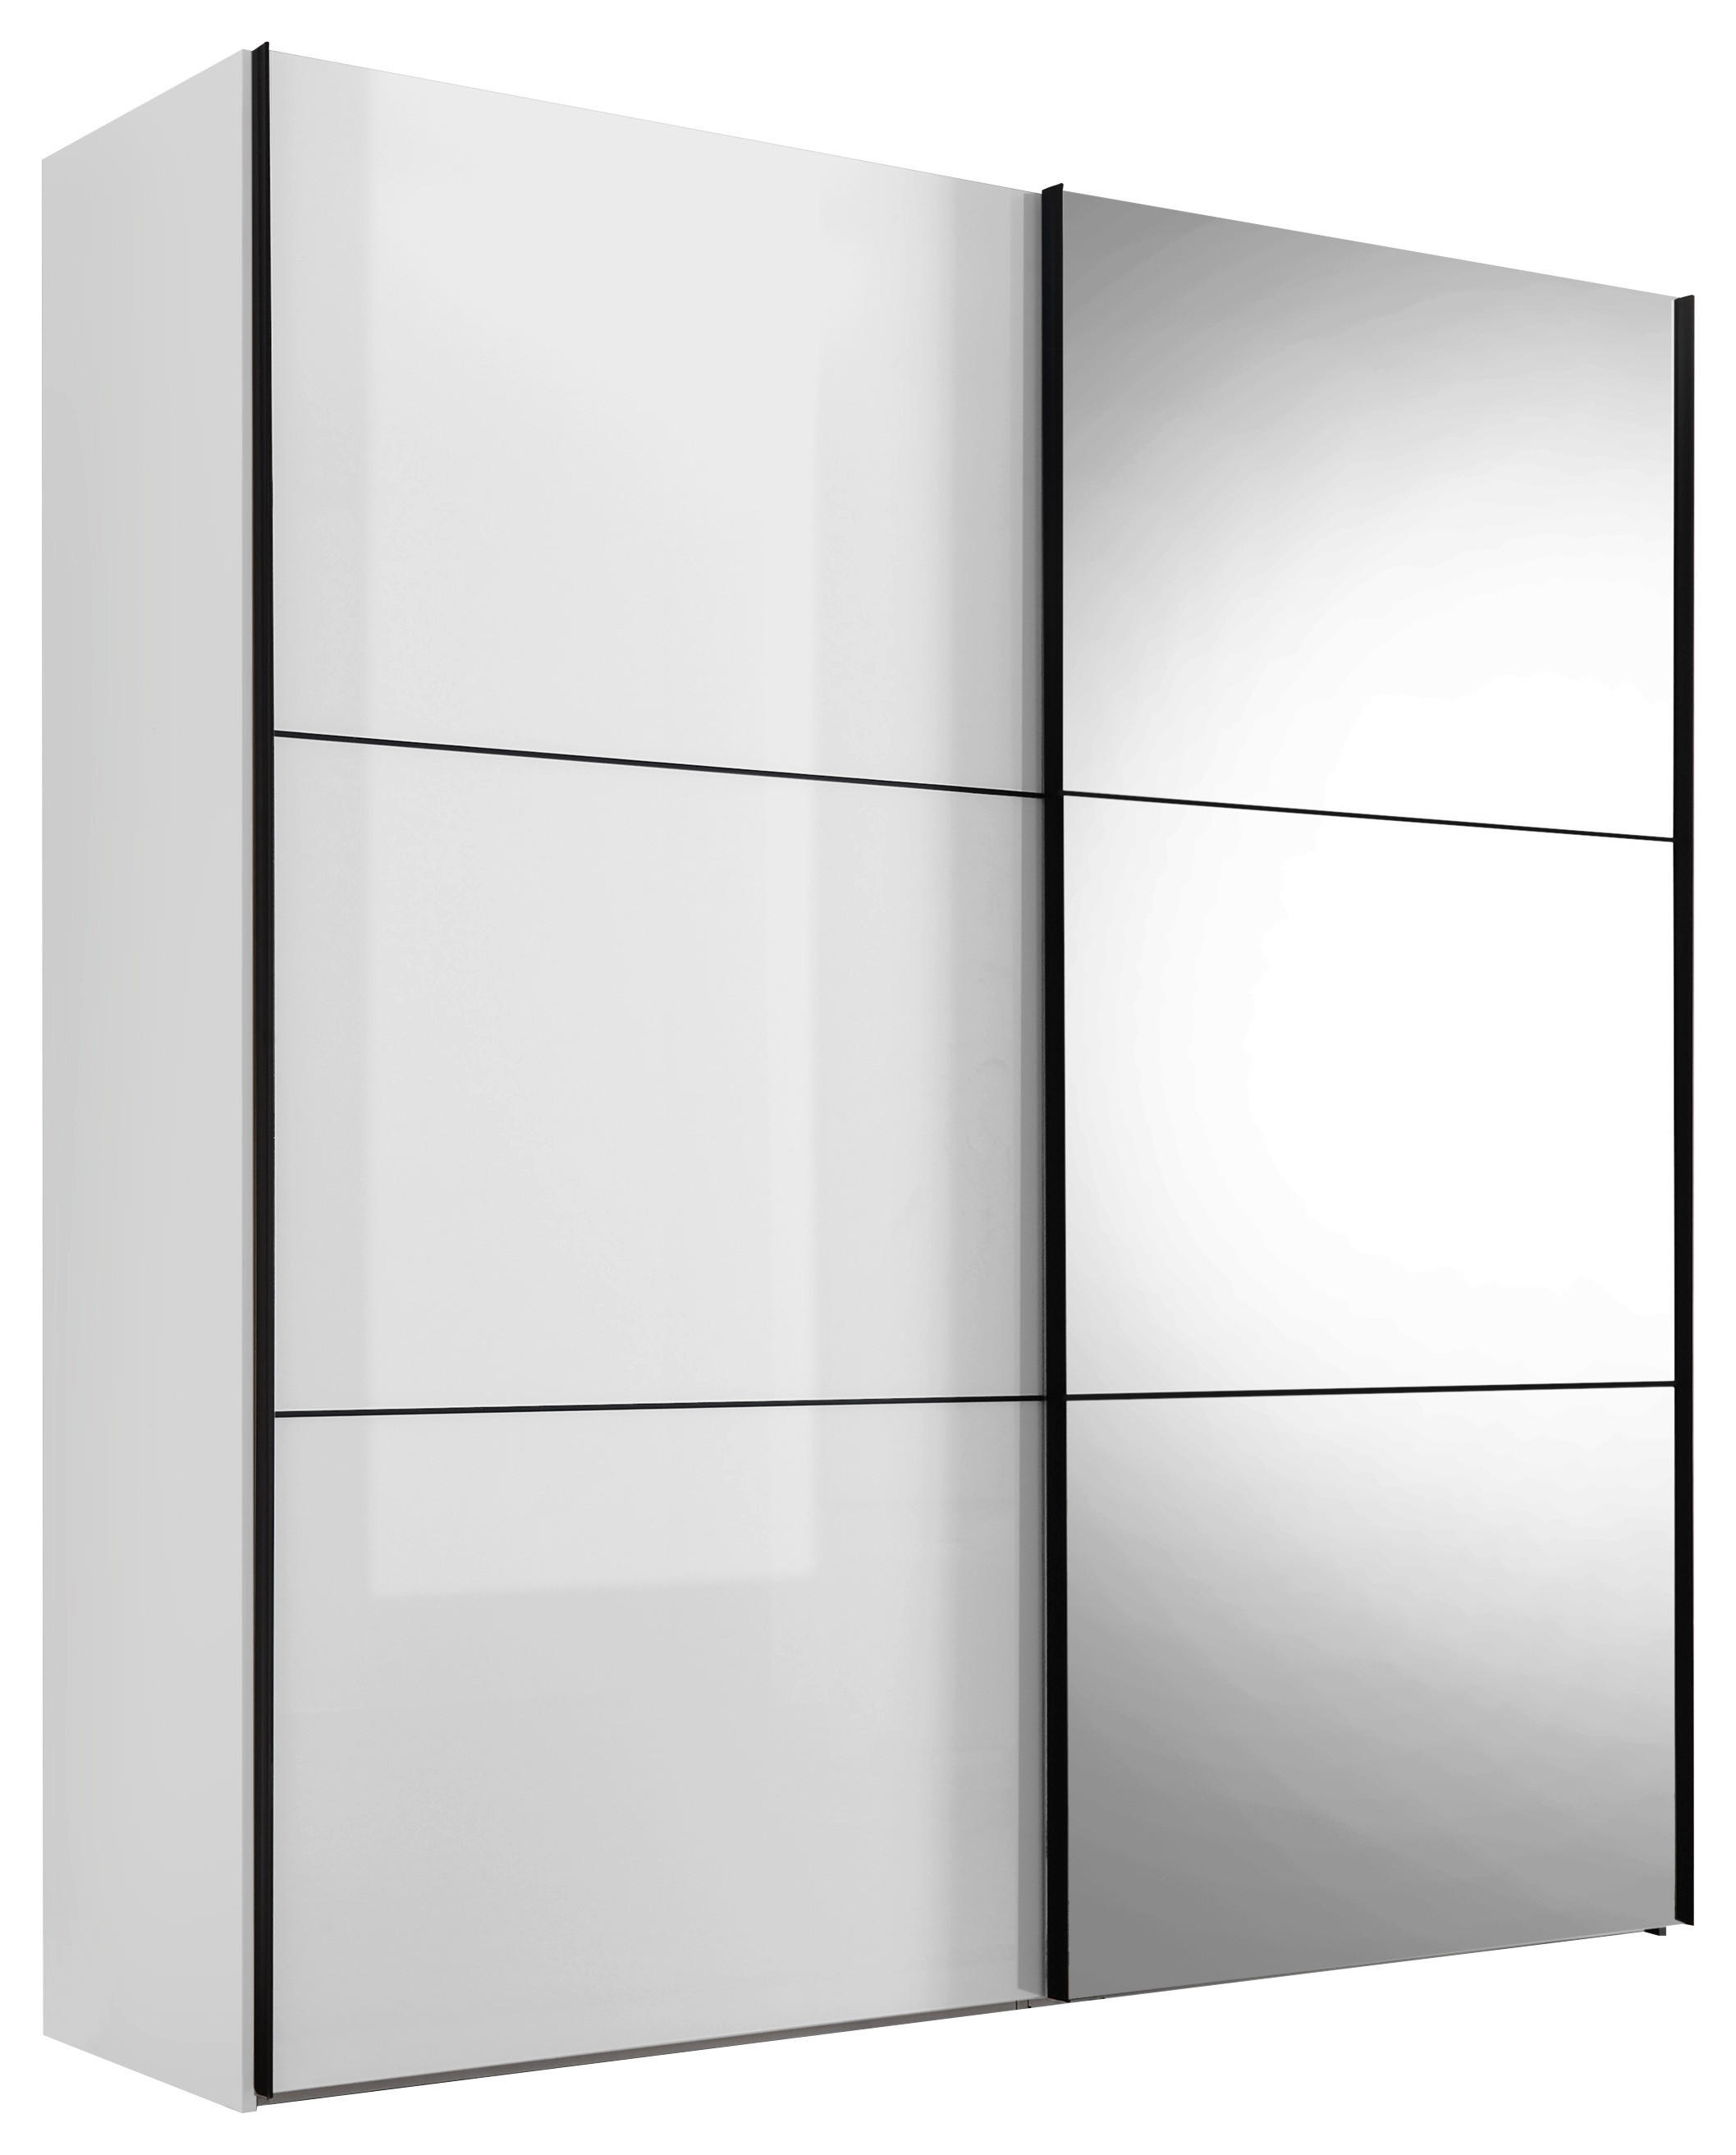 SCHWEBETÜRENSCHRANK 167/222/68 cm 2-türig  - Schwarz/Weiß, KONVENTIONELL, Glas/Holzwerkstoff (167/222/68cm) - Moderano